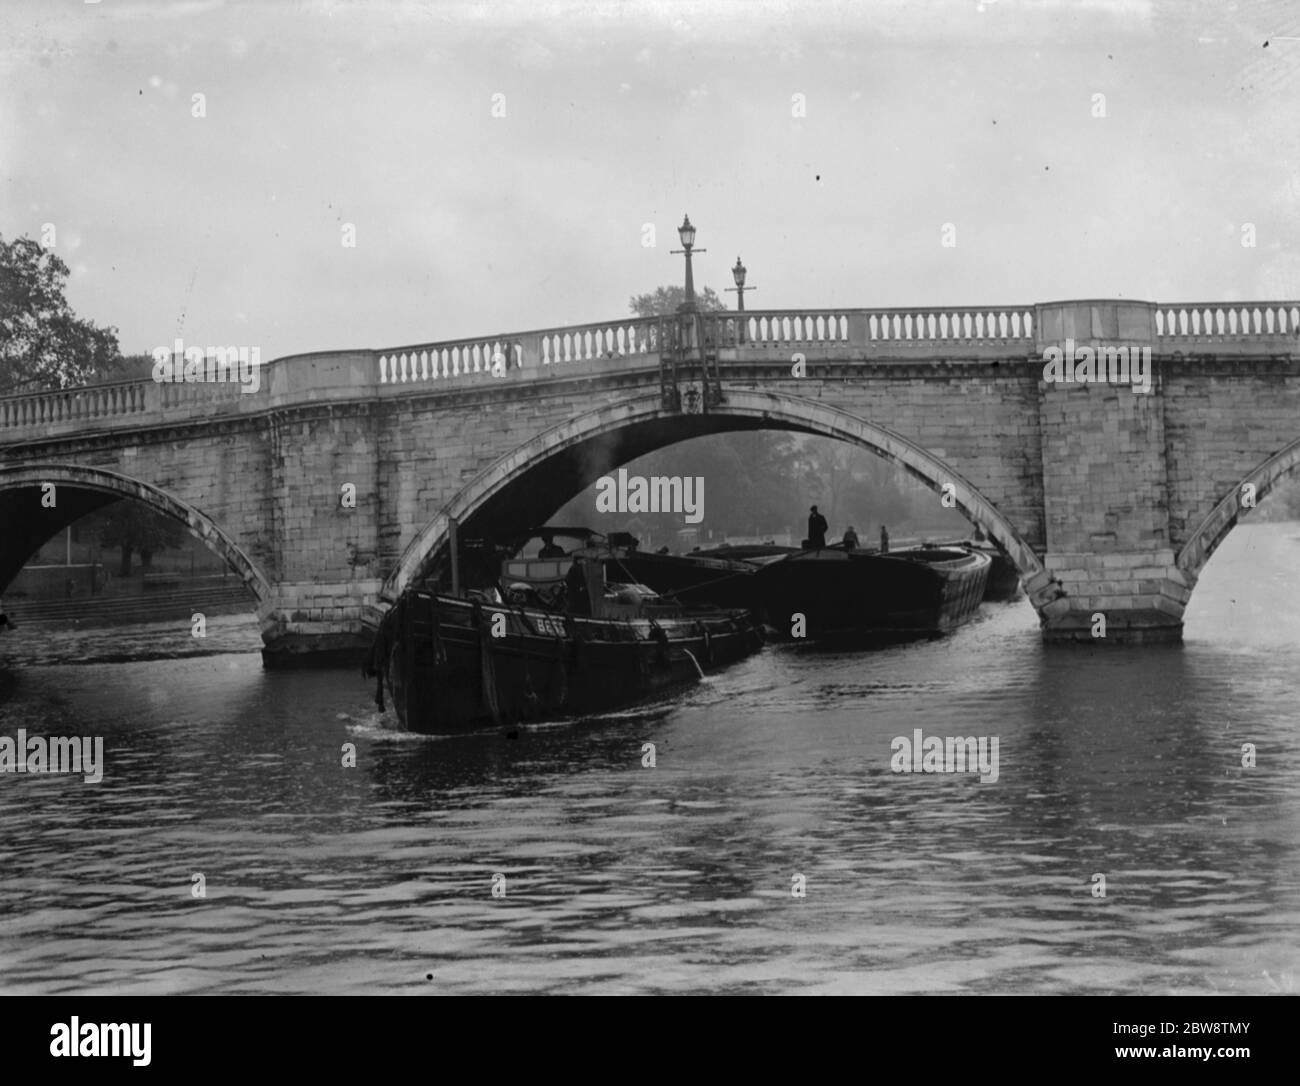 L'Associazione dei maestri Lightermen e proprietari di chiatte ha posto una domanda per la riparazione del ponte di Richmond sul fiume Tamigi a Londra . Le foto mostrano un rimorchiatore che traina una chiatta sotto il ponte di Richmond . 1936 26 ottobre 1936 Foto Stock